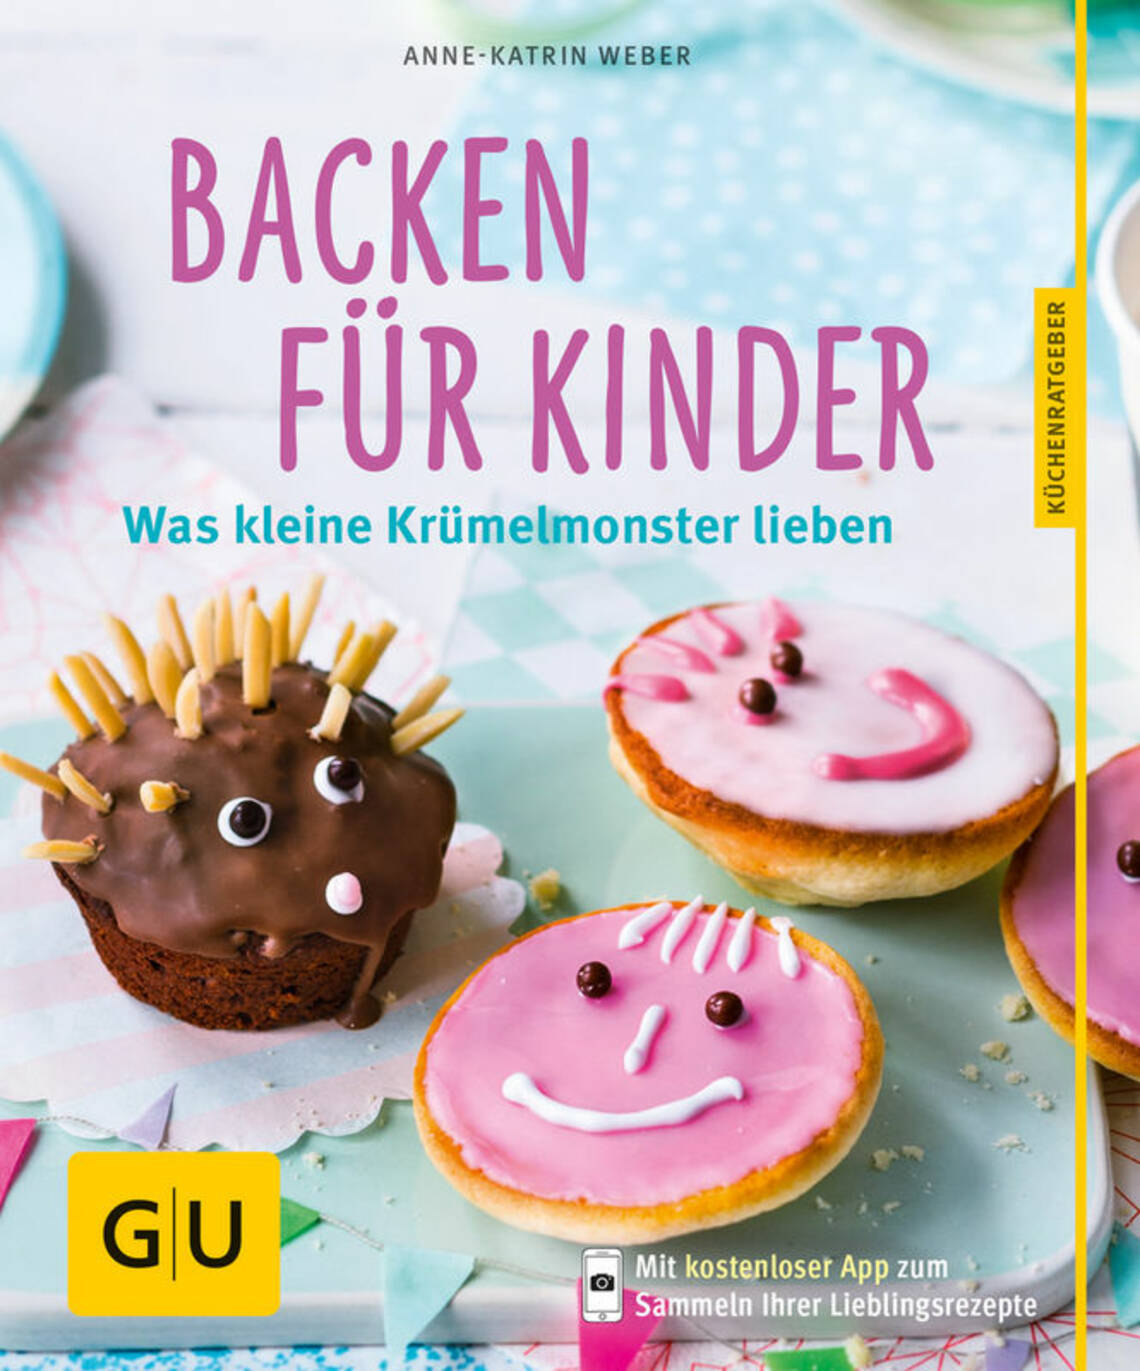 Backen für Kinder von Anne-Katrin Weber, Anne-Katrin Weber, Sabine Schlimm